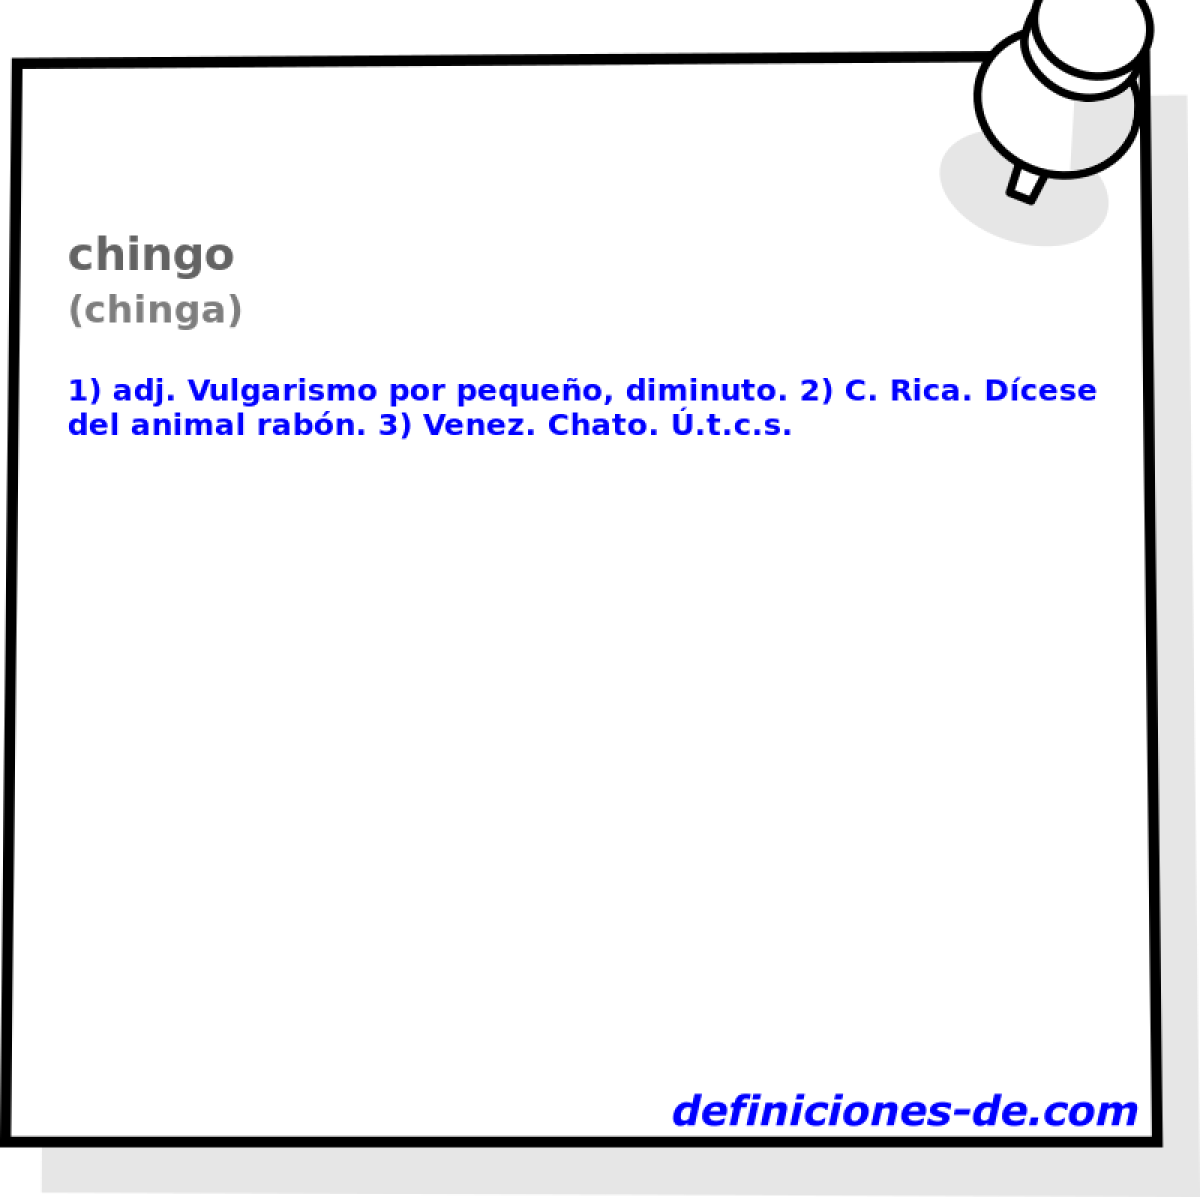 chingo (chinga)